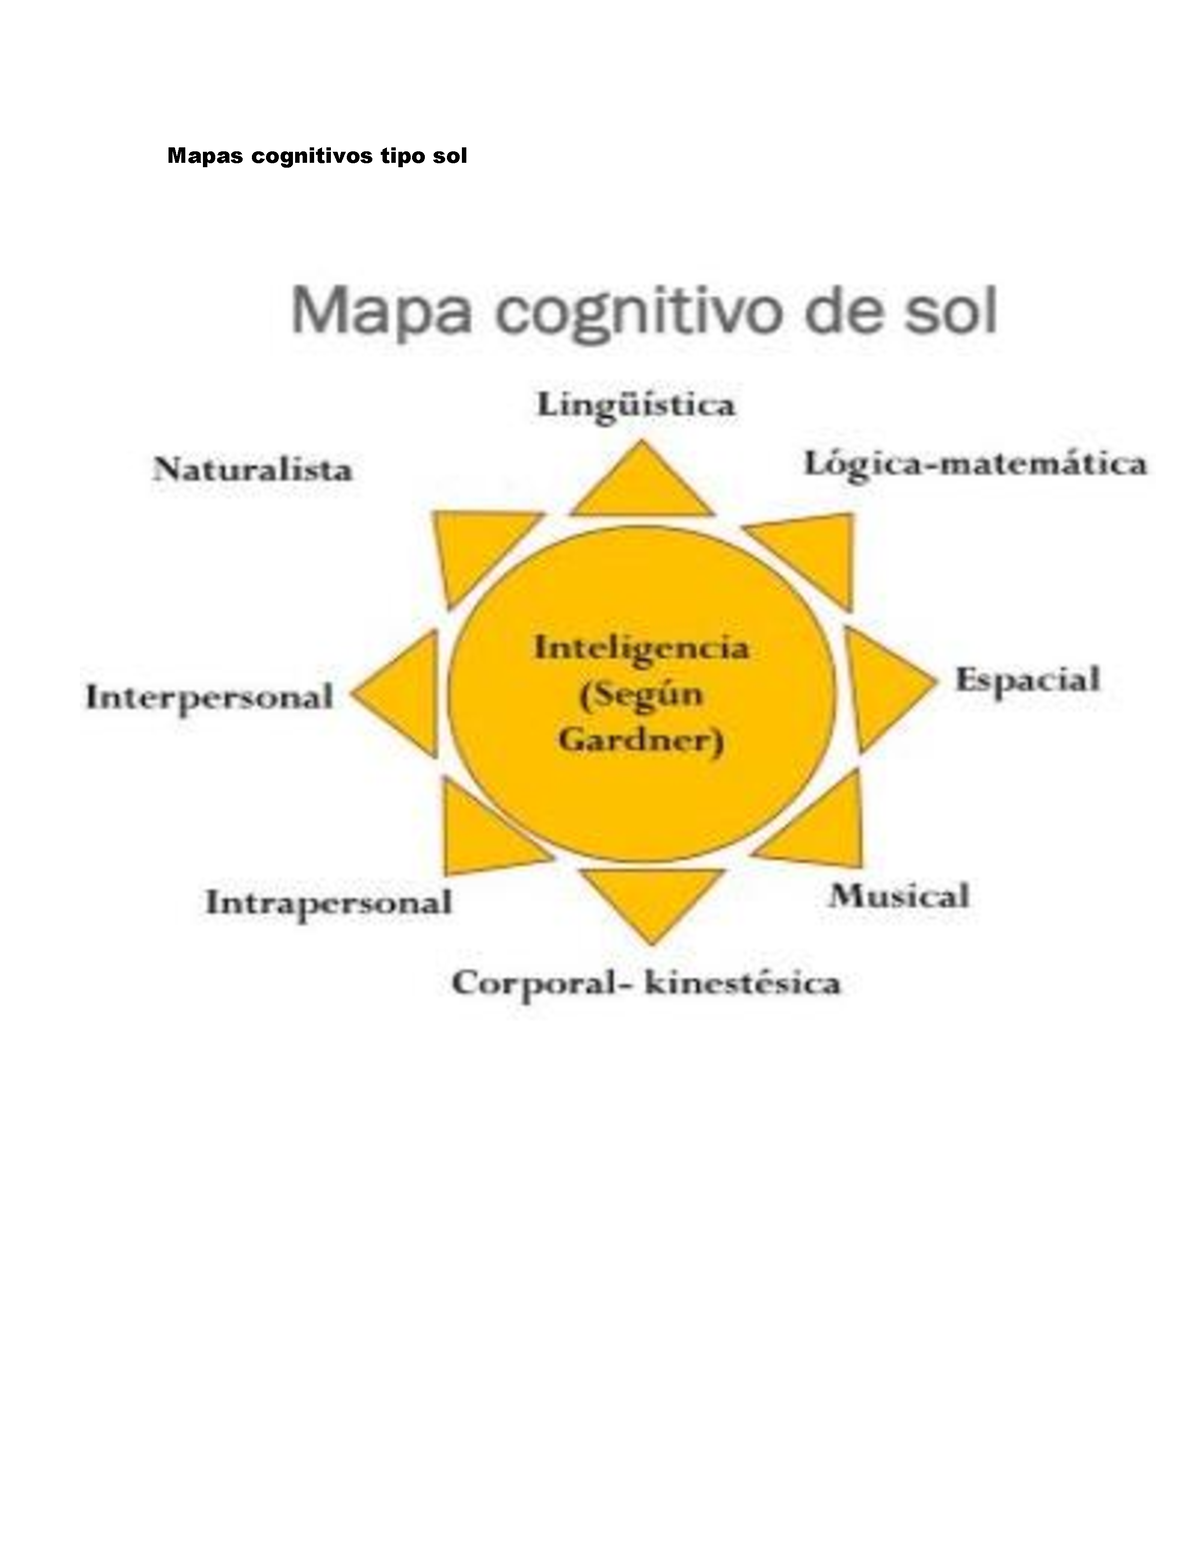 Ejemplo De Mapa Tipo Sol Estadistica Mapas Cognitivos Tipo Sol 4198